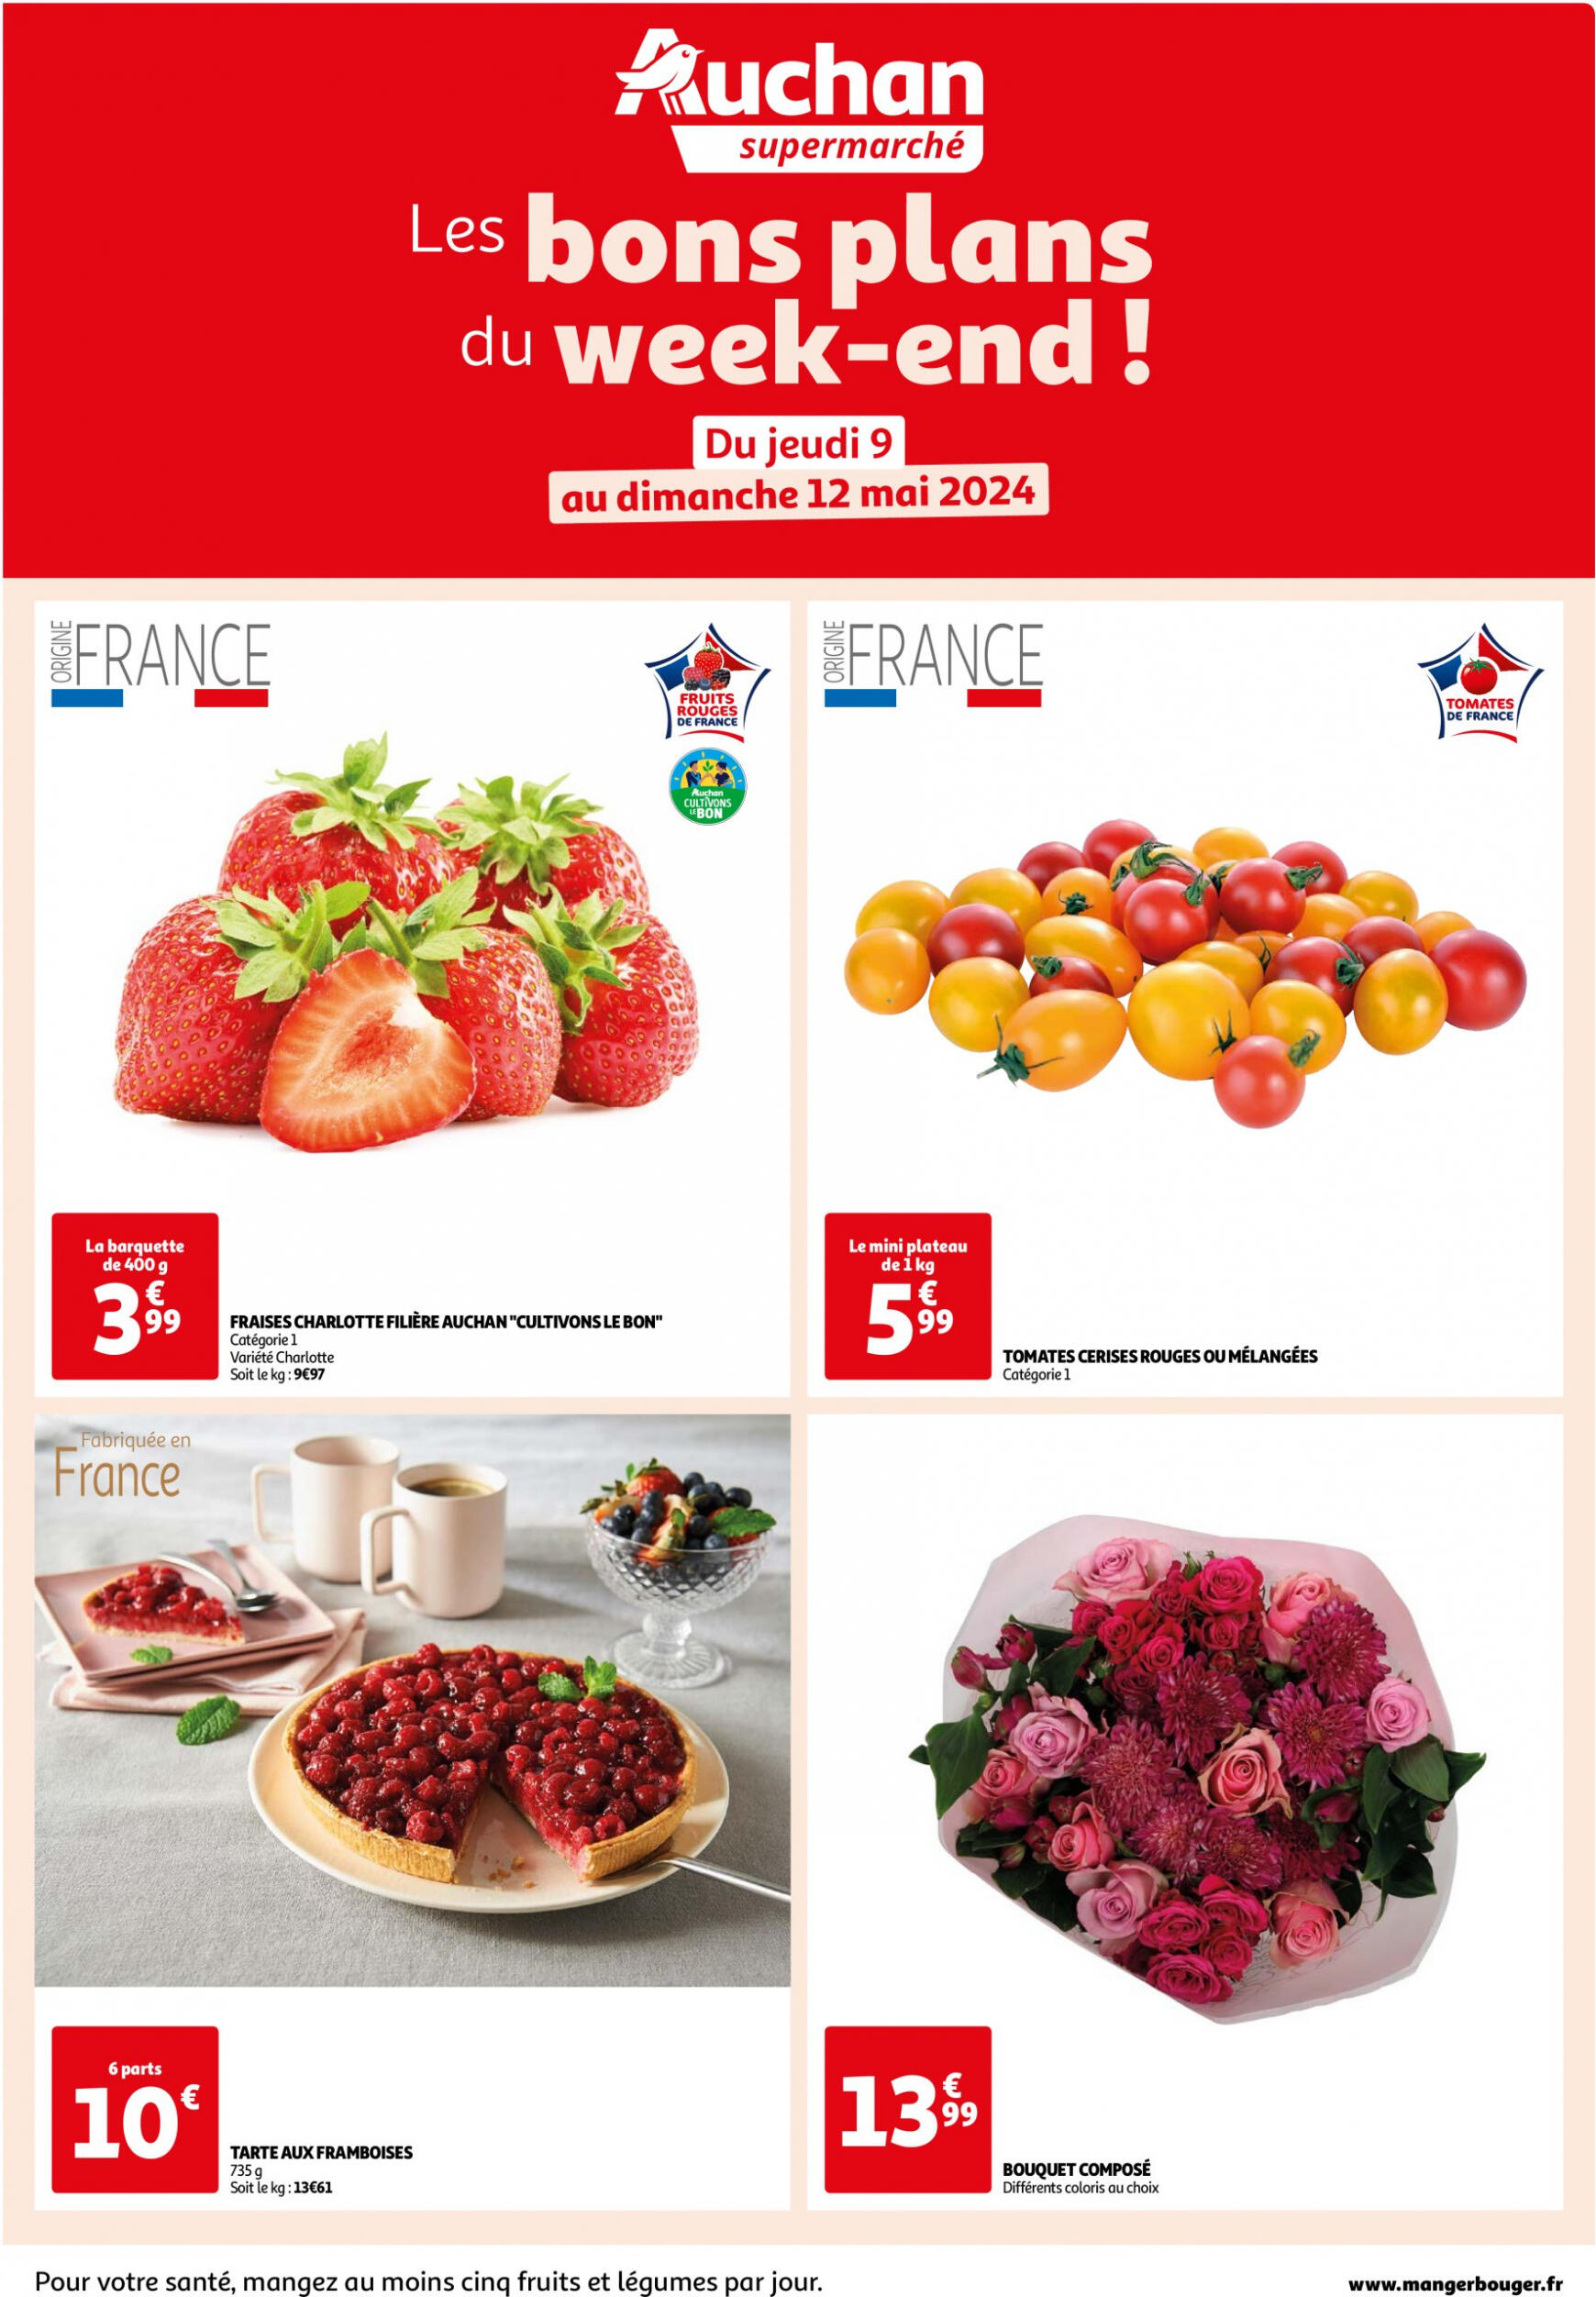 auchan - Prospectus Auchan Supermarché - Les bons plans du week-end dans votre super ! actuel 09.05. - 12.05. - page: 1